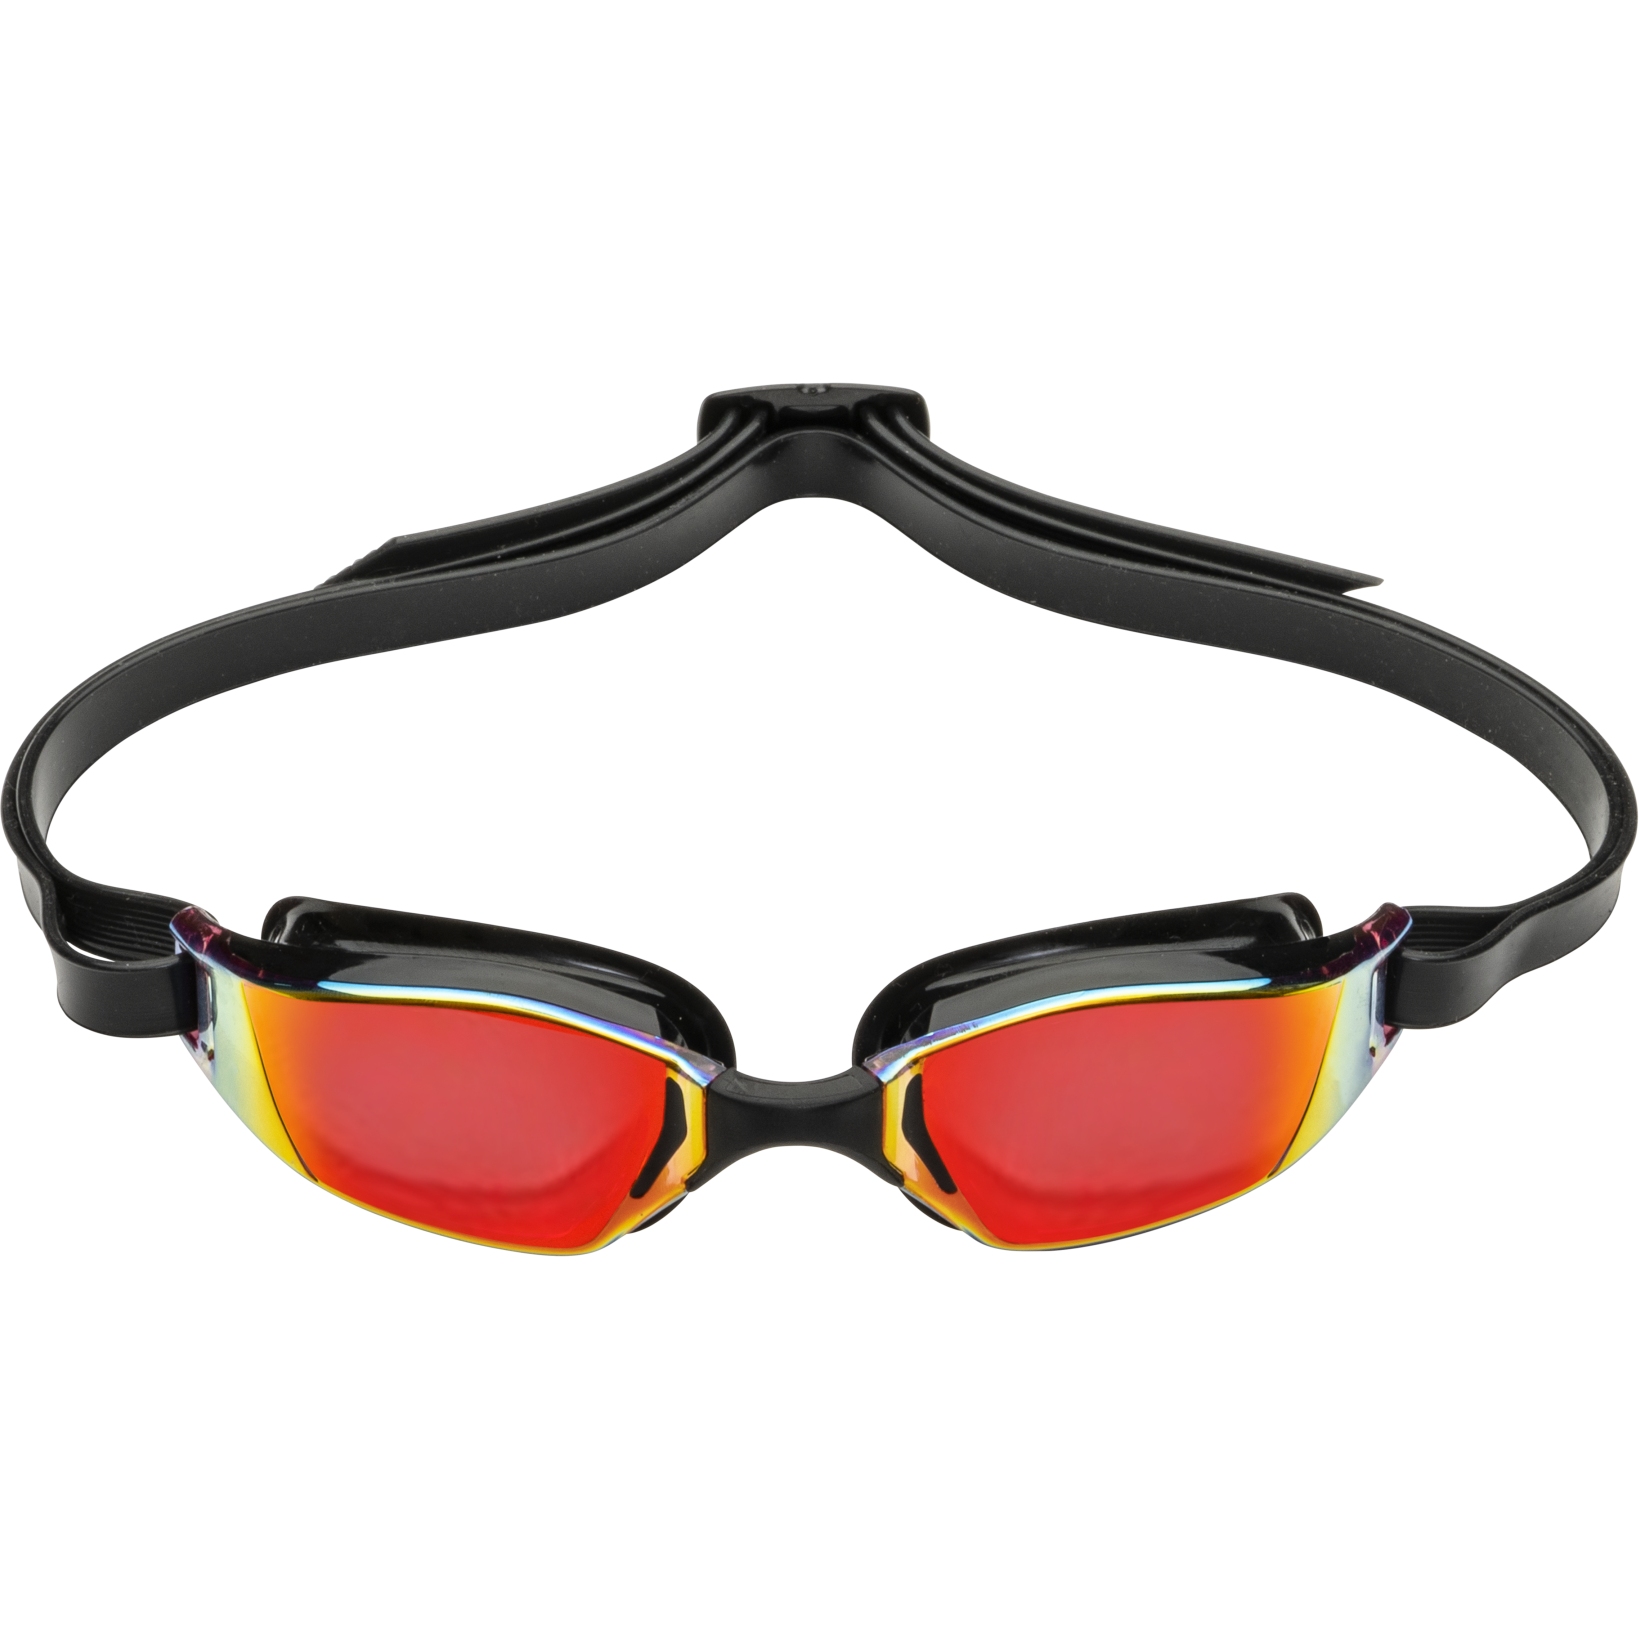 Picture of AQUASPHERE Xceed Swim Goggles - Red Titanium Mirrored - Black/Black